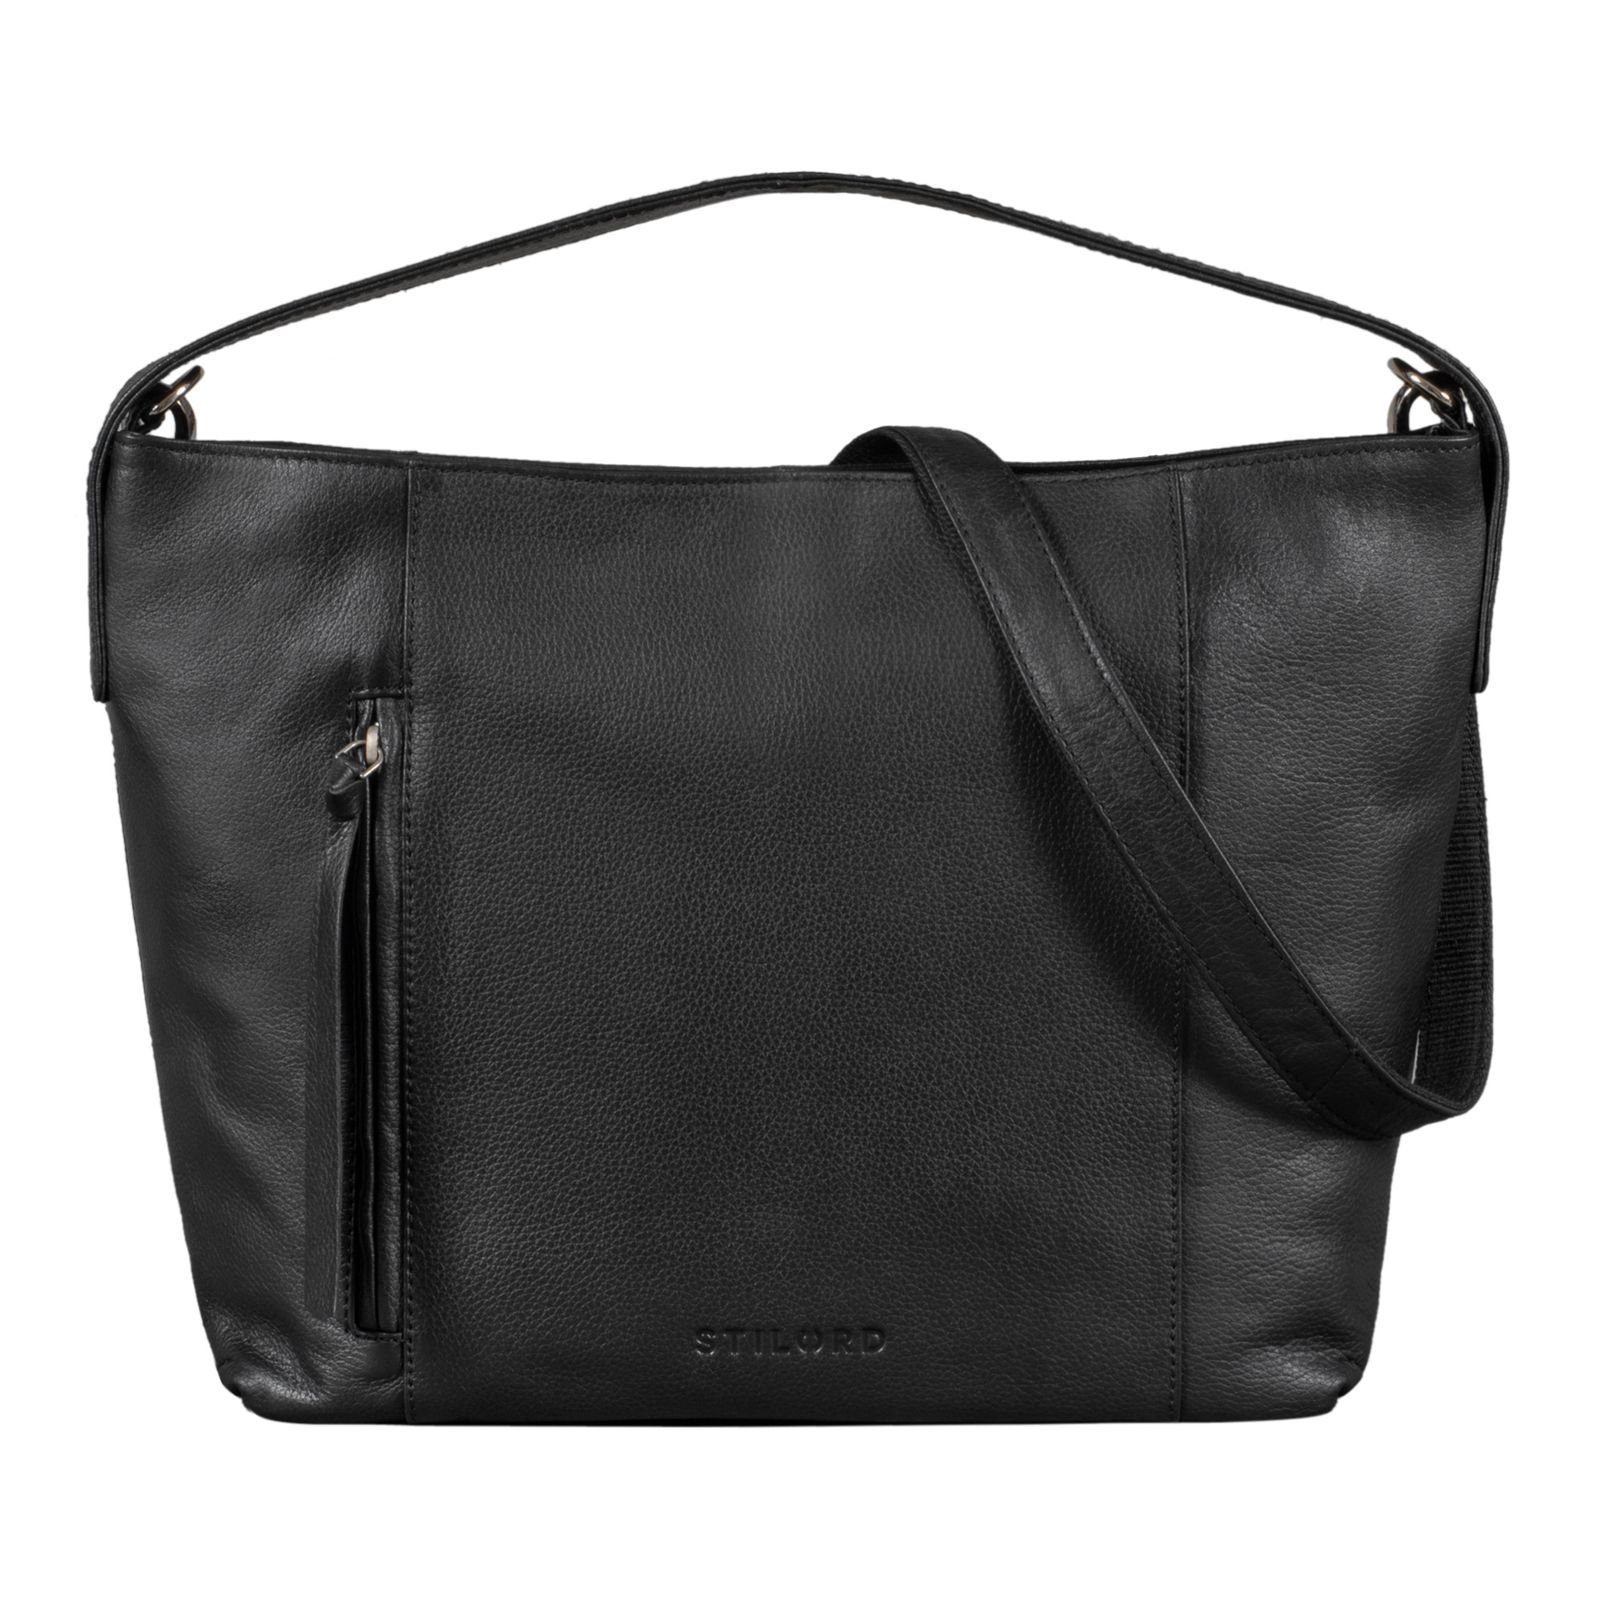 STILORD Handtasche "Marilyn" Shopper Damen Groß Leder Handtasche schwarz